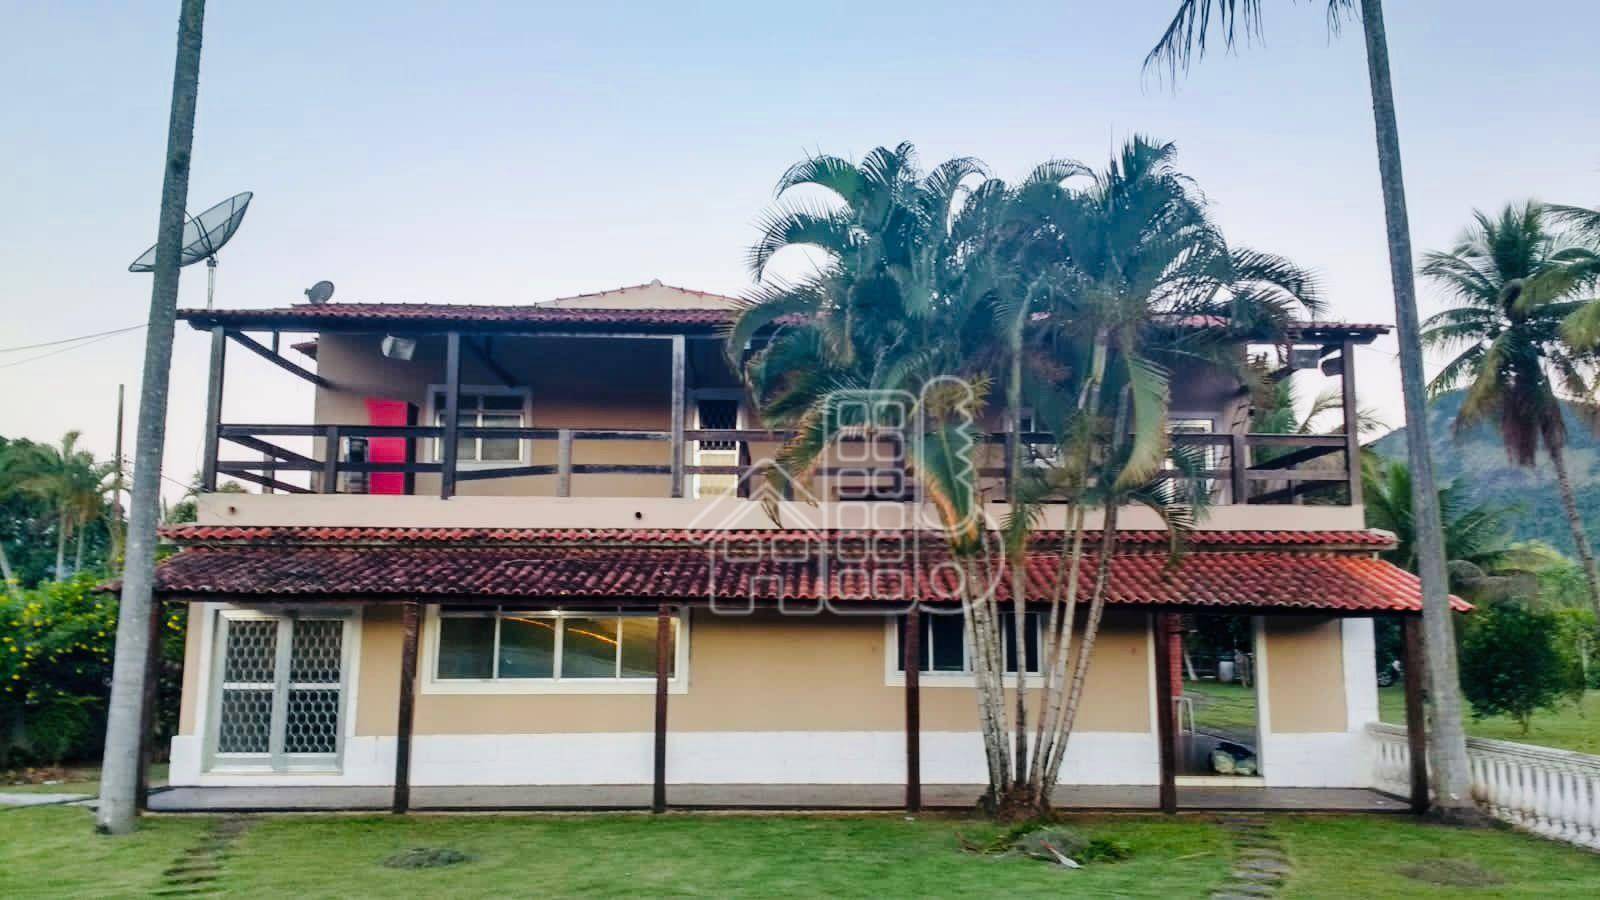 Chácara com 3 dormitórios à venda, 5000 m² por R$ 980.000,00 - Ubatiba - Maricá/RJ